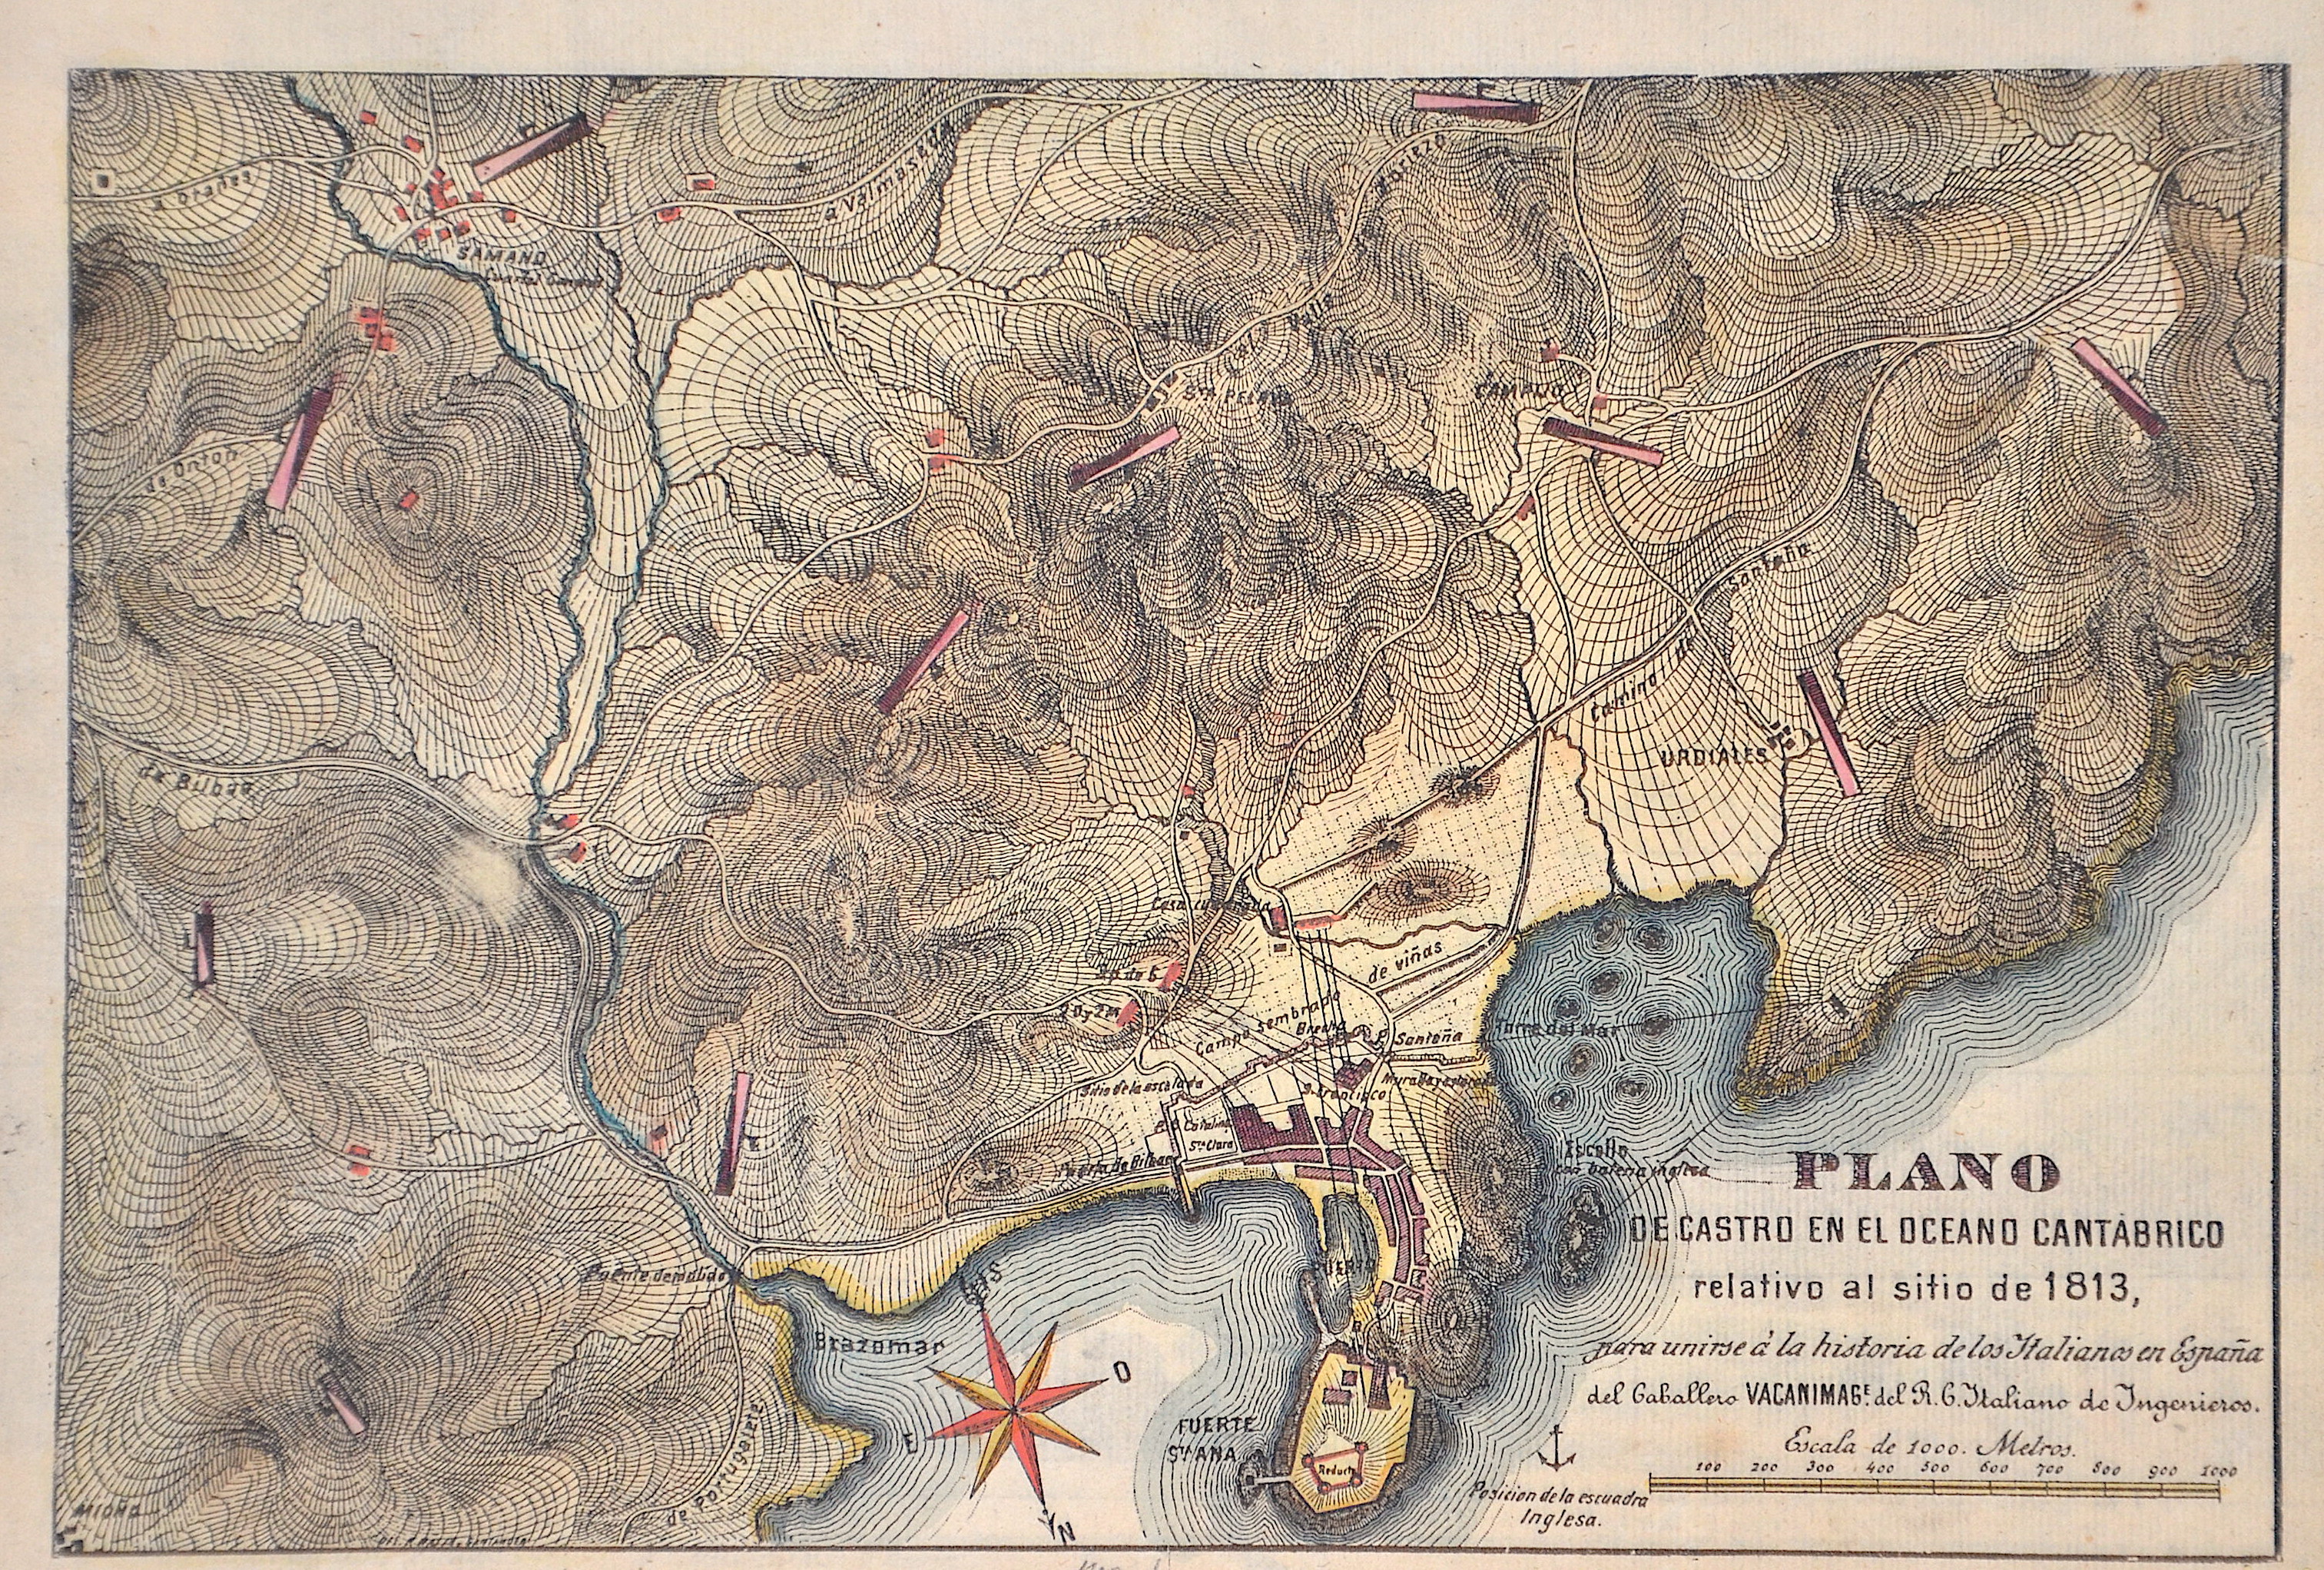 Vacanimag  Plano de Castro en el Oceano Cantabrico relativo al sitio de 1813,